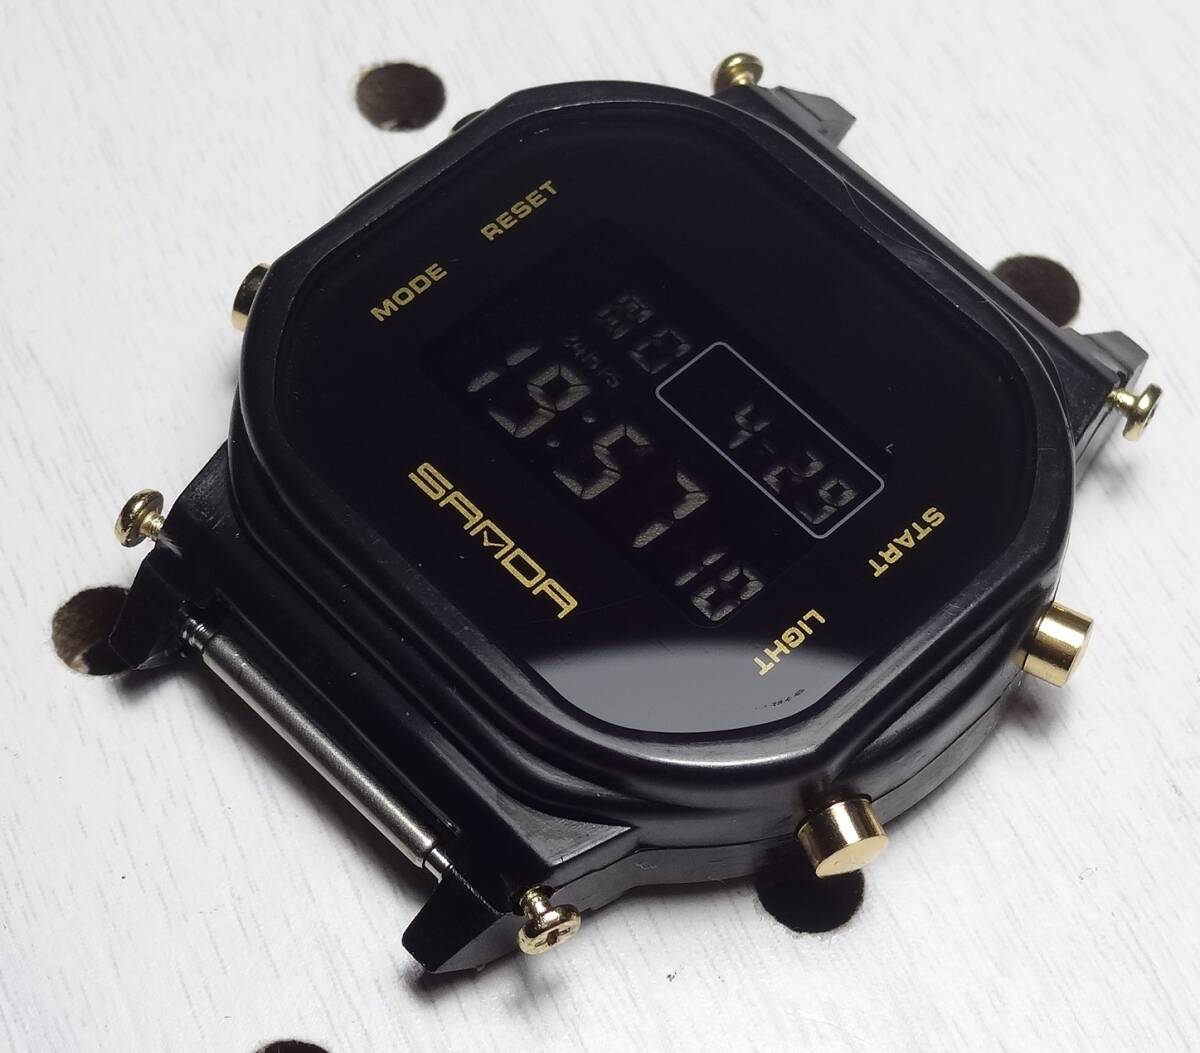 DW-5600 スピードモデル 互換モジュール 反転液晶 ゴールド デジタルウォッチ 腕時計の画像1